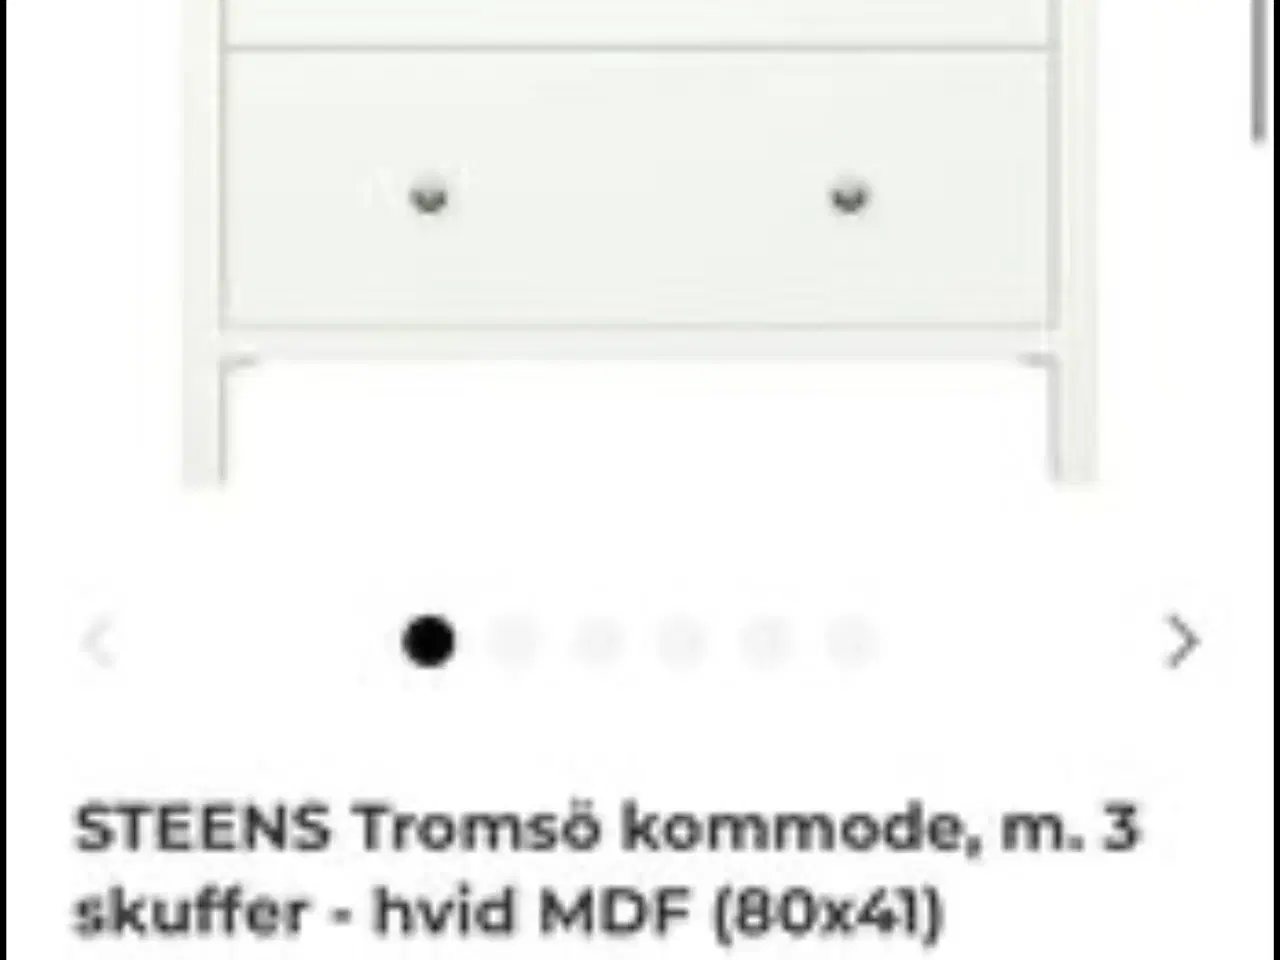 Billede 4 - Tromsö kommode, m. 3 skuffer - hvid MDF (80x41)Hel